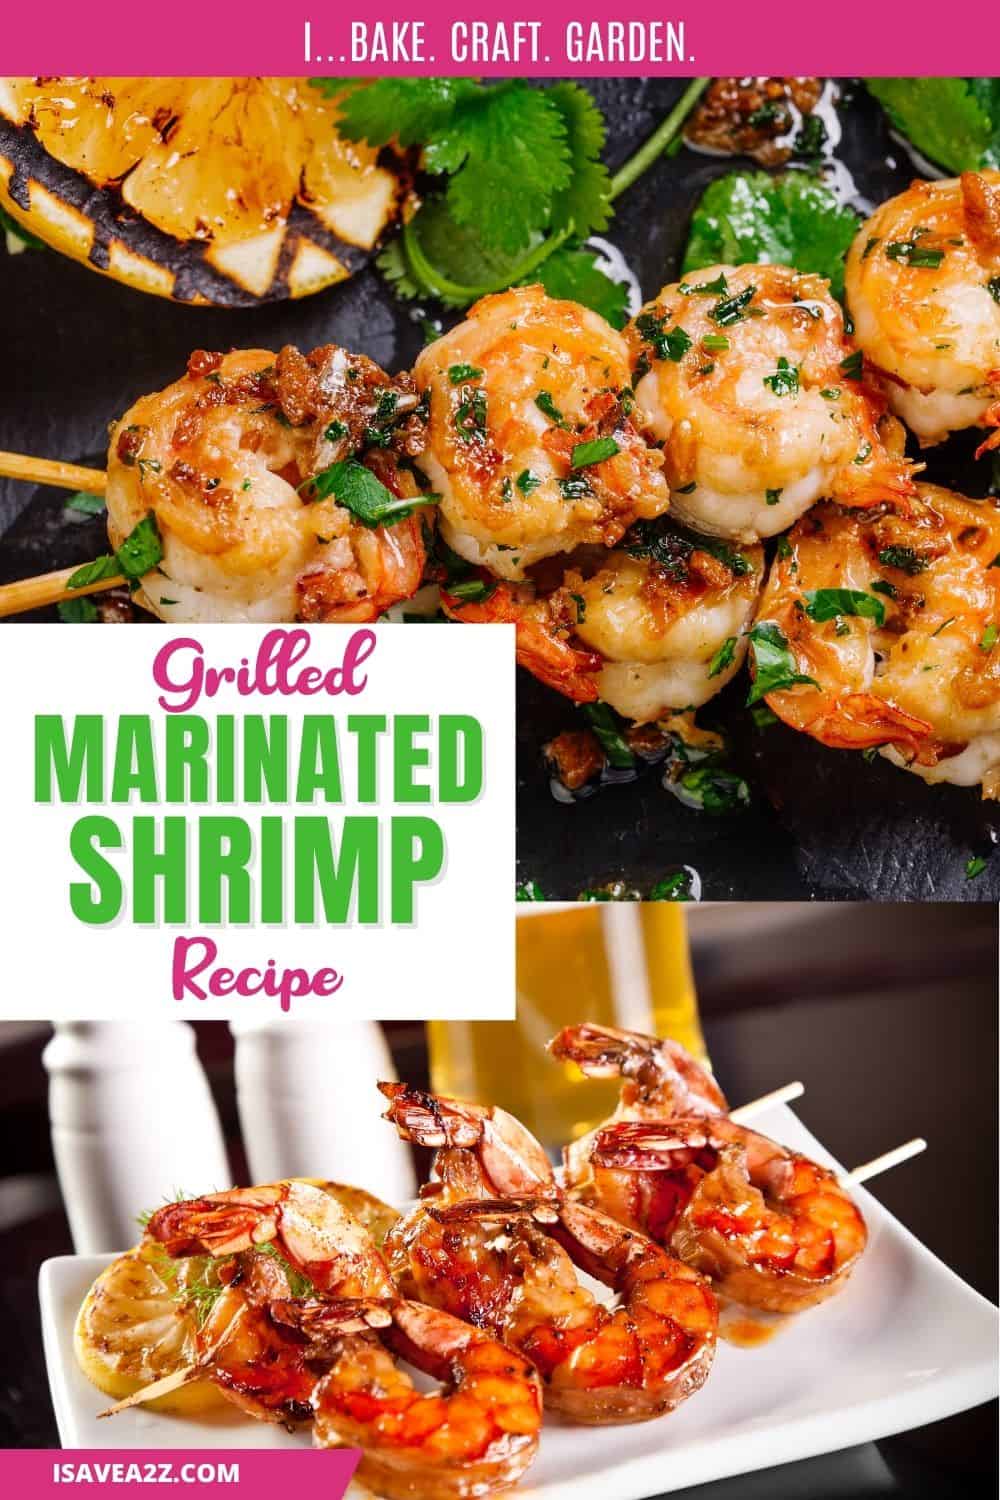 Grilled shrimp on a skewer